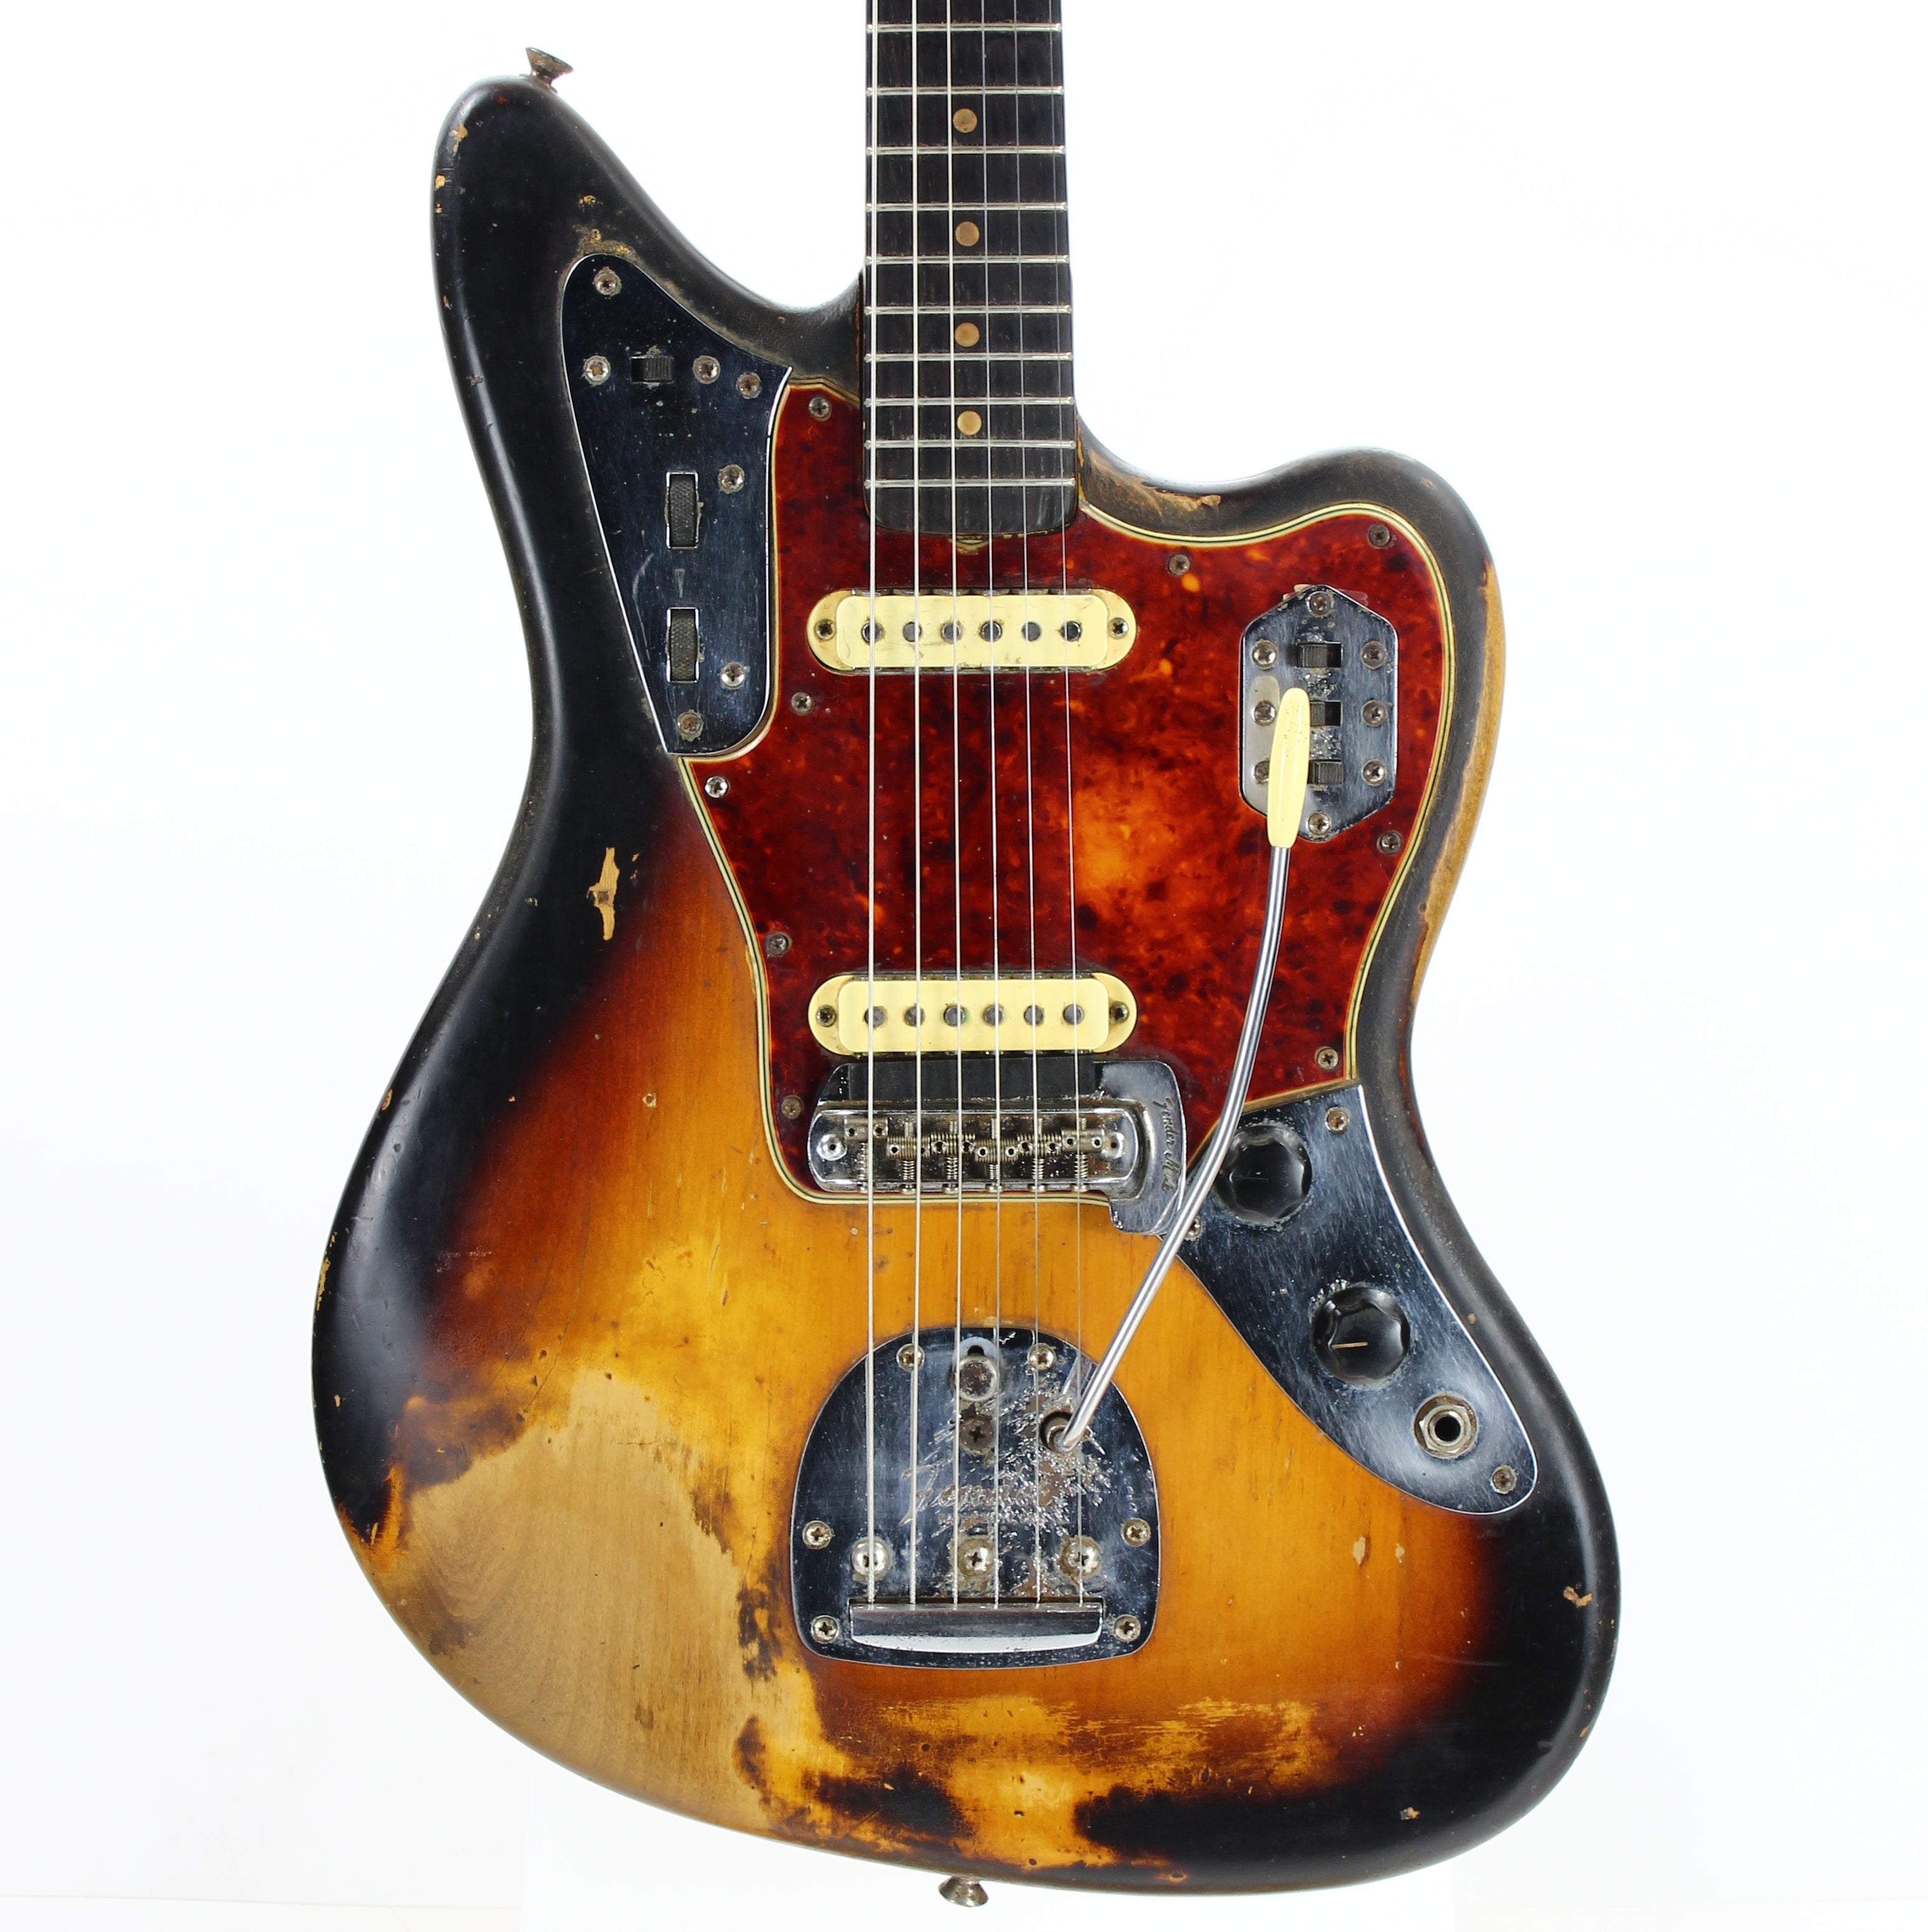 1960's Fender Jaguar in Sunburst with Tortoise Shell Pickguard Very Worn